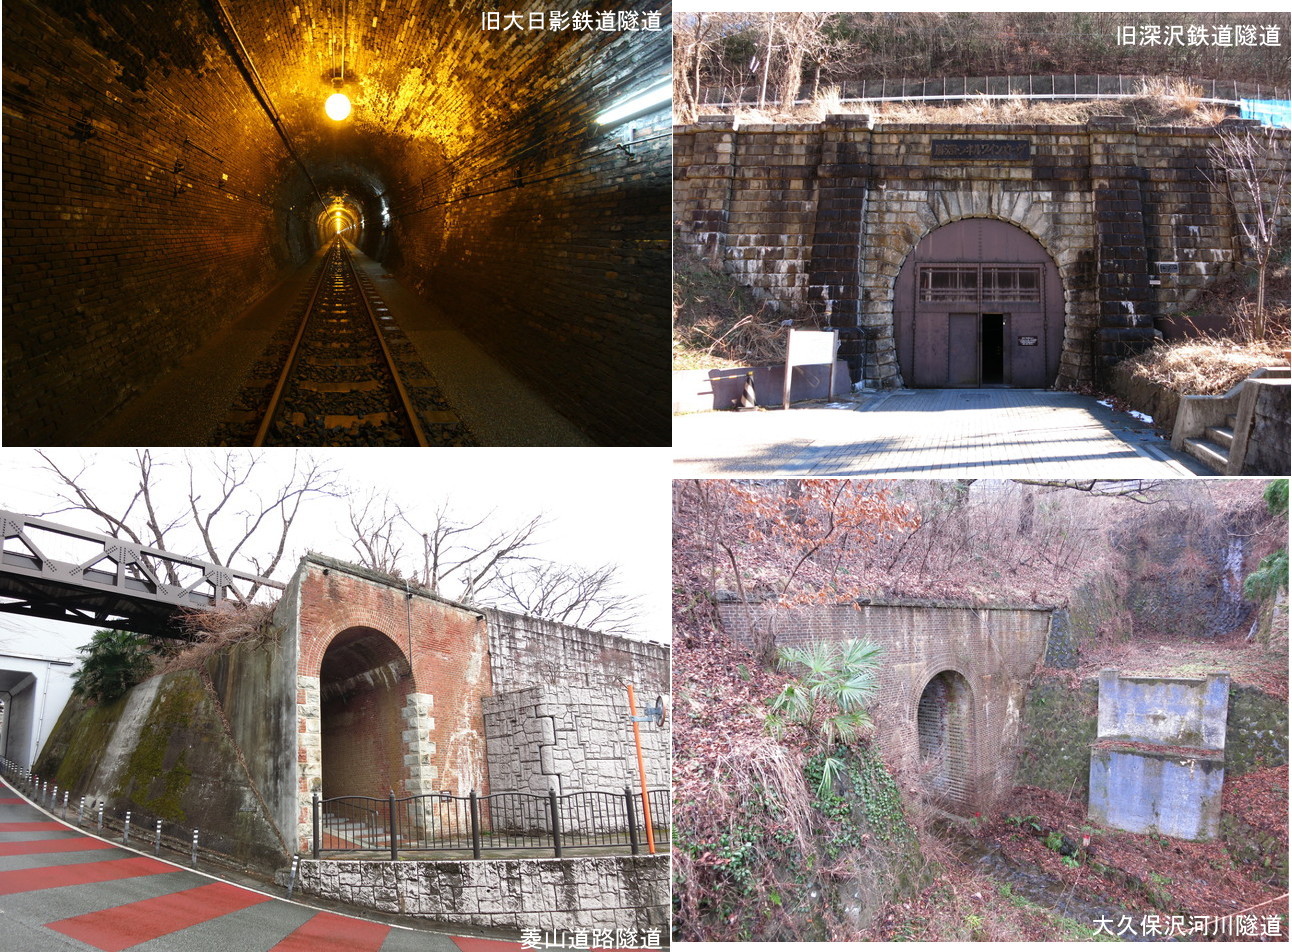 旧大日影鉄道隧道・旧深沢鉄道隧道と周辺の隧道遺構